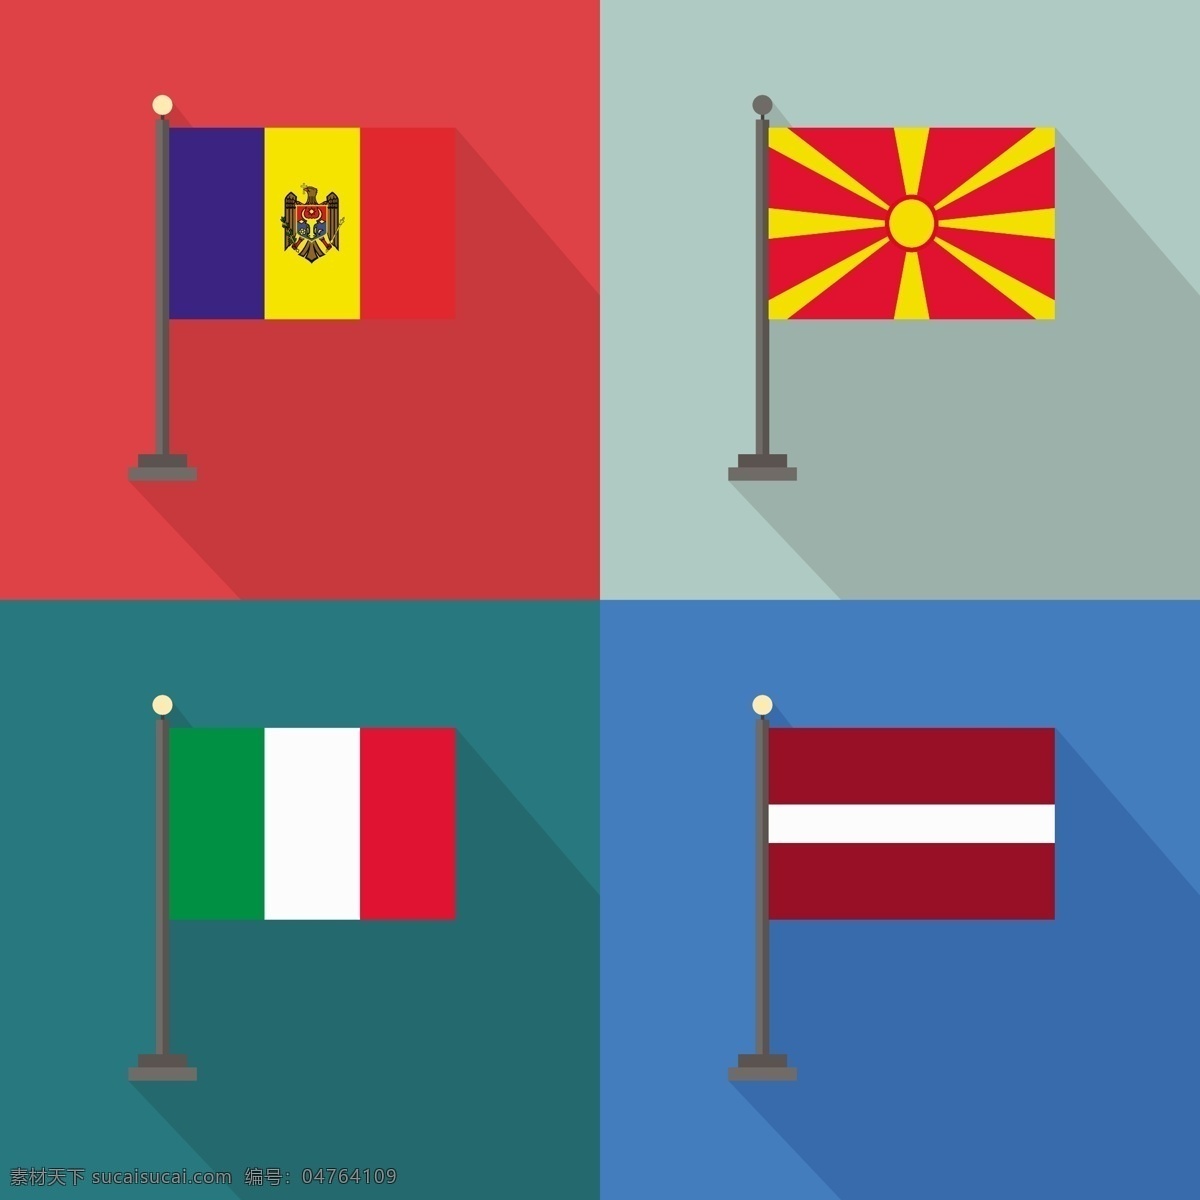 摩尔 达 维亚 意大利 马其顿 拉脱维亚 国旗 世界 旗帜 标志 国家 爱国 地理 民族 白色